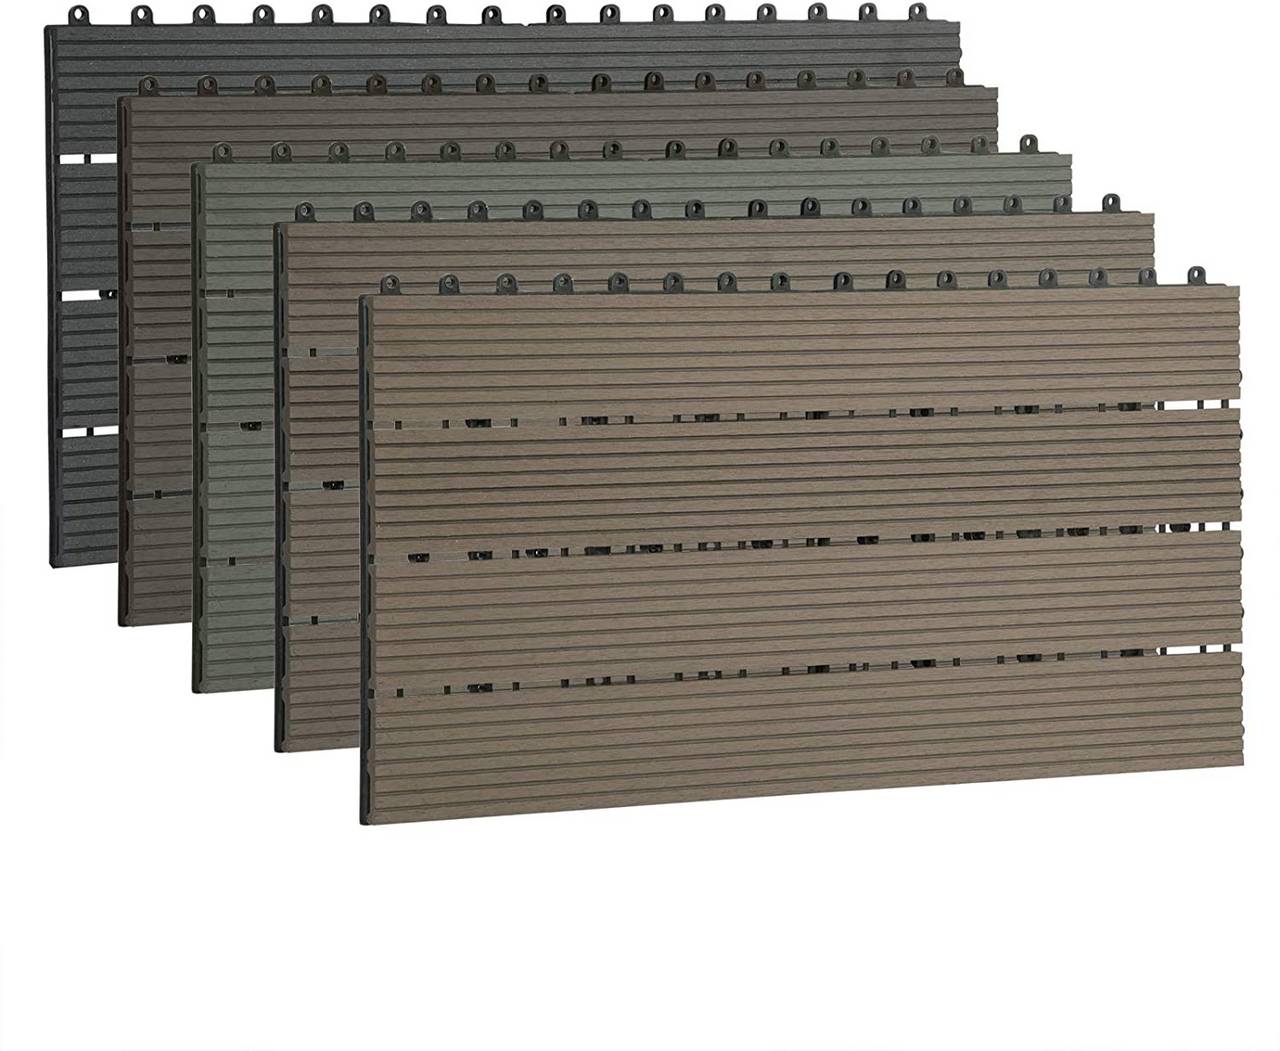 Terrassenfliesen Wpc Schön 12 X Wpc Interlocking Decking Tiles Water Resistant Wood Plastic Posite Deck Floor Tiles